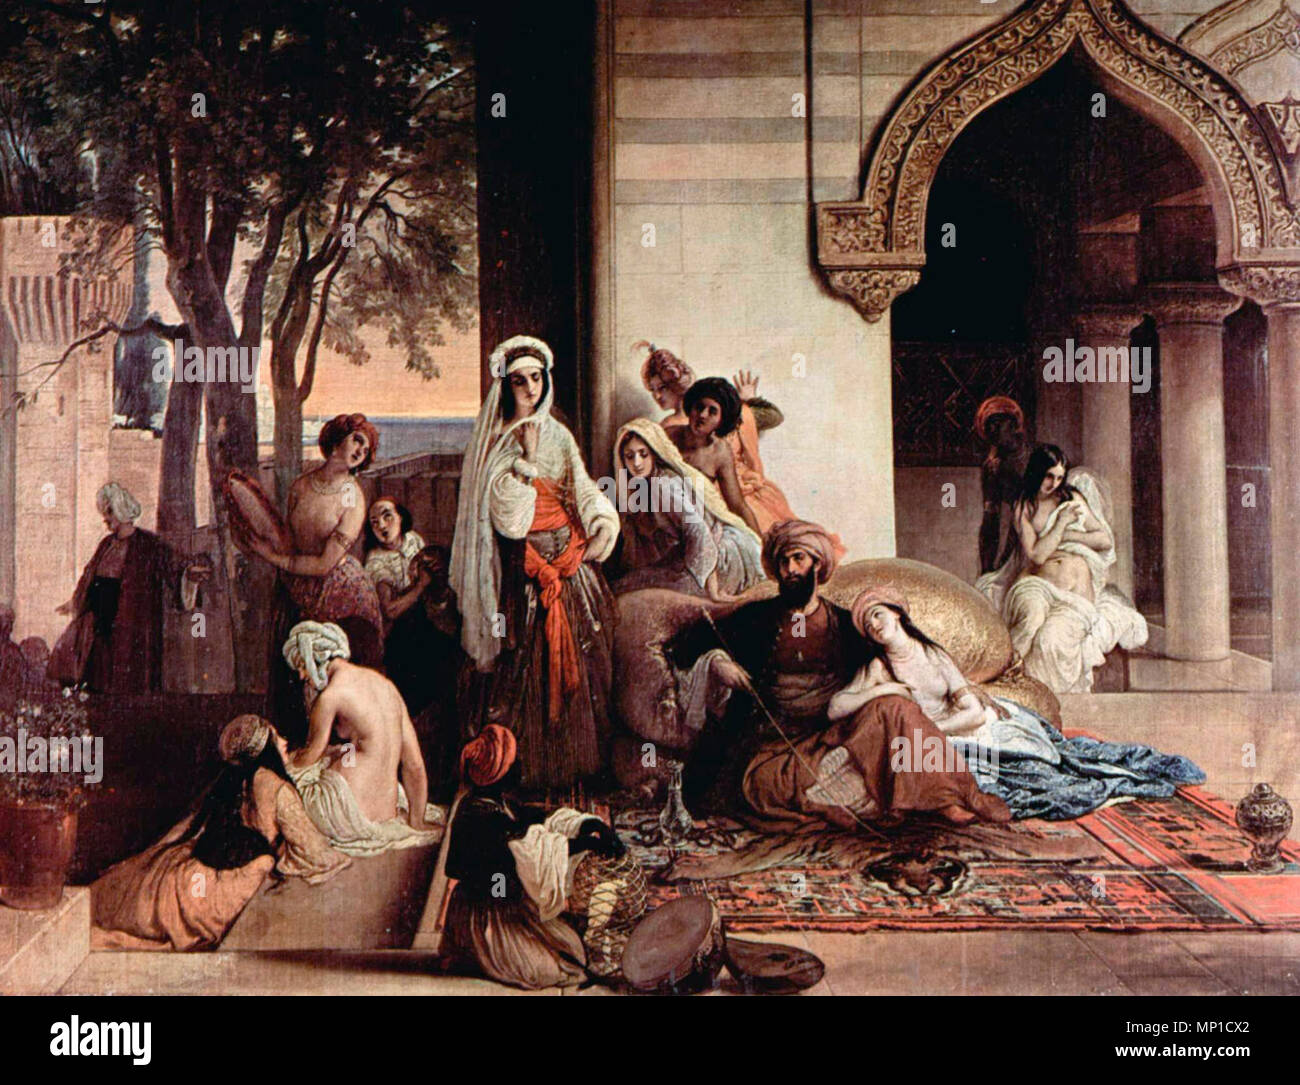 Le nouveau favori (scène de harem) - Francesco Hayez, 1866 Banque D'Images